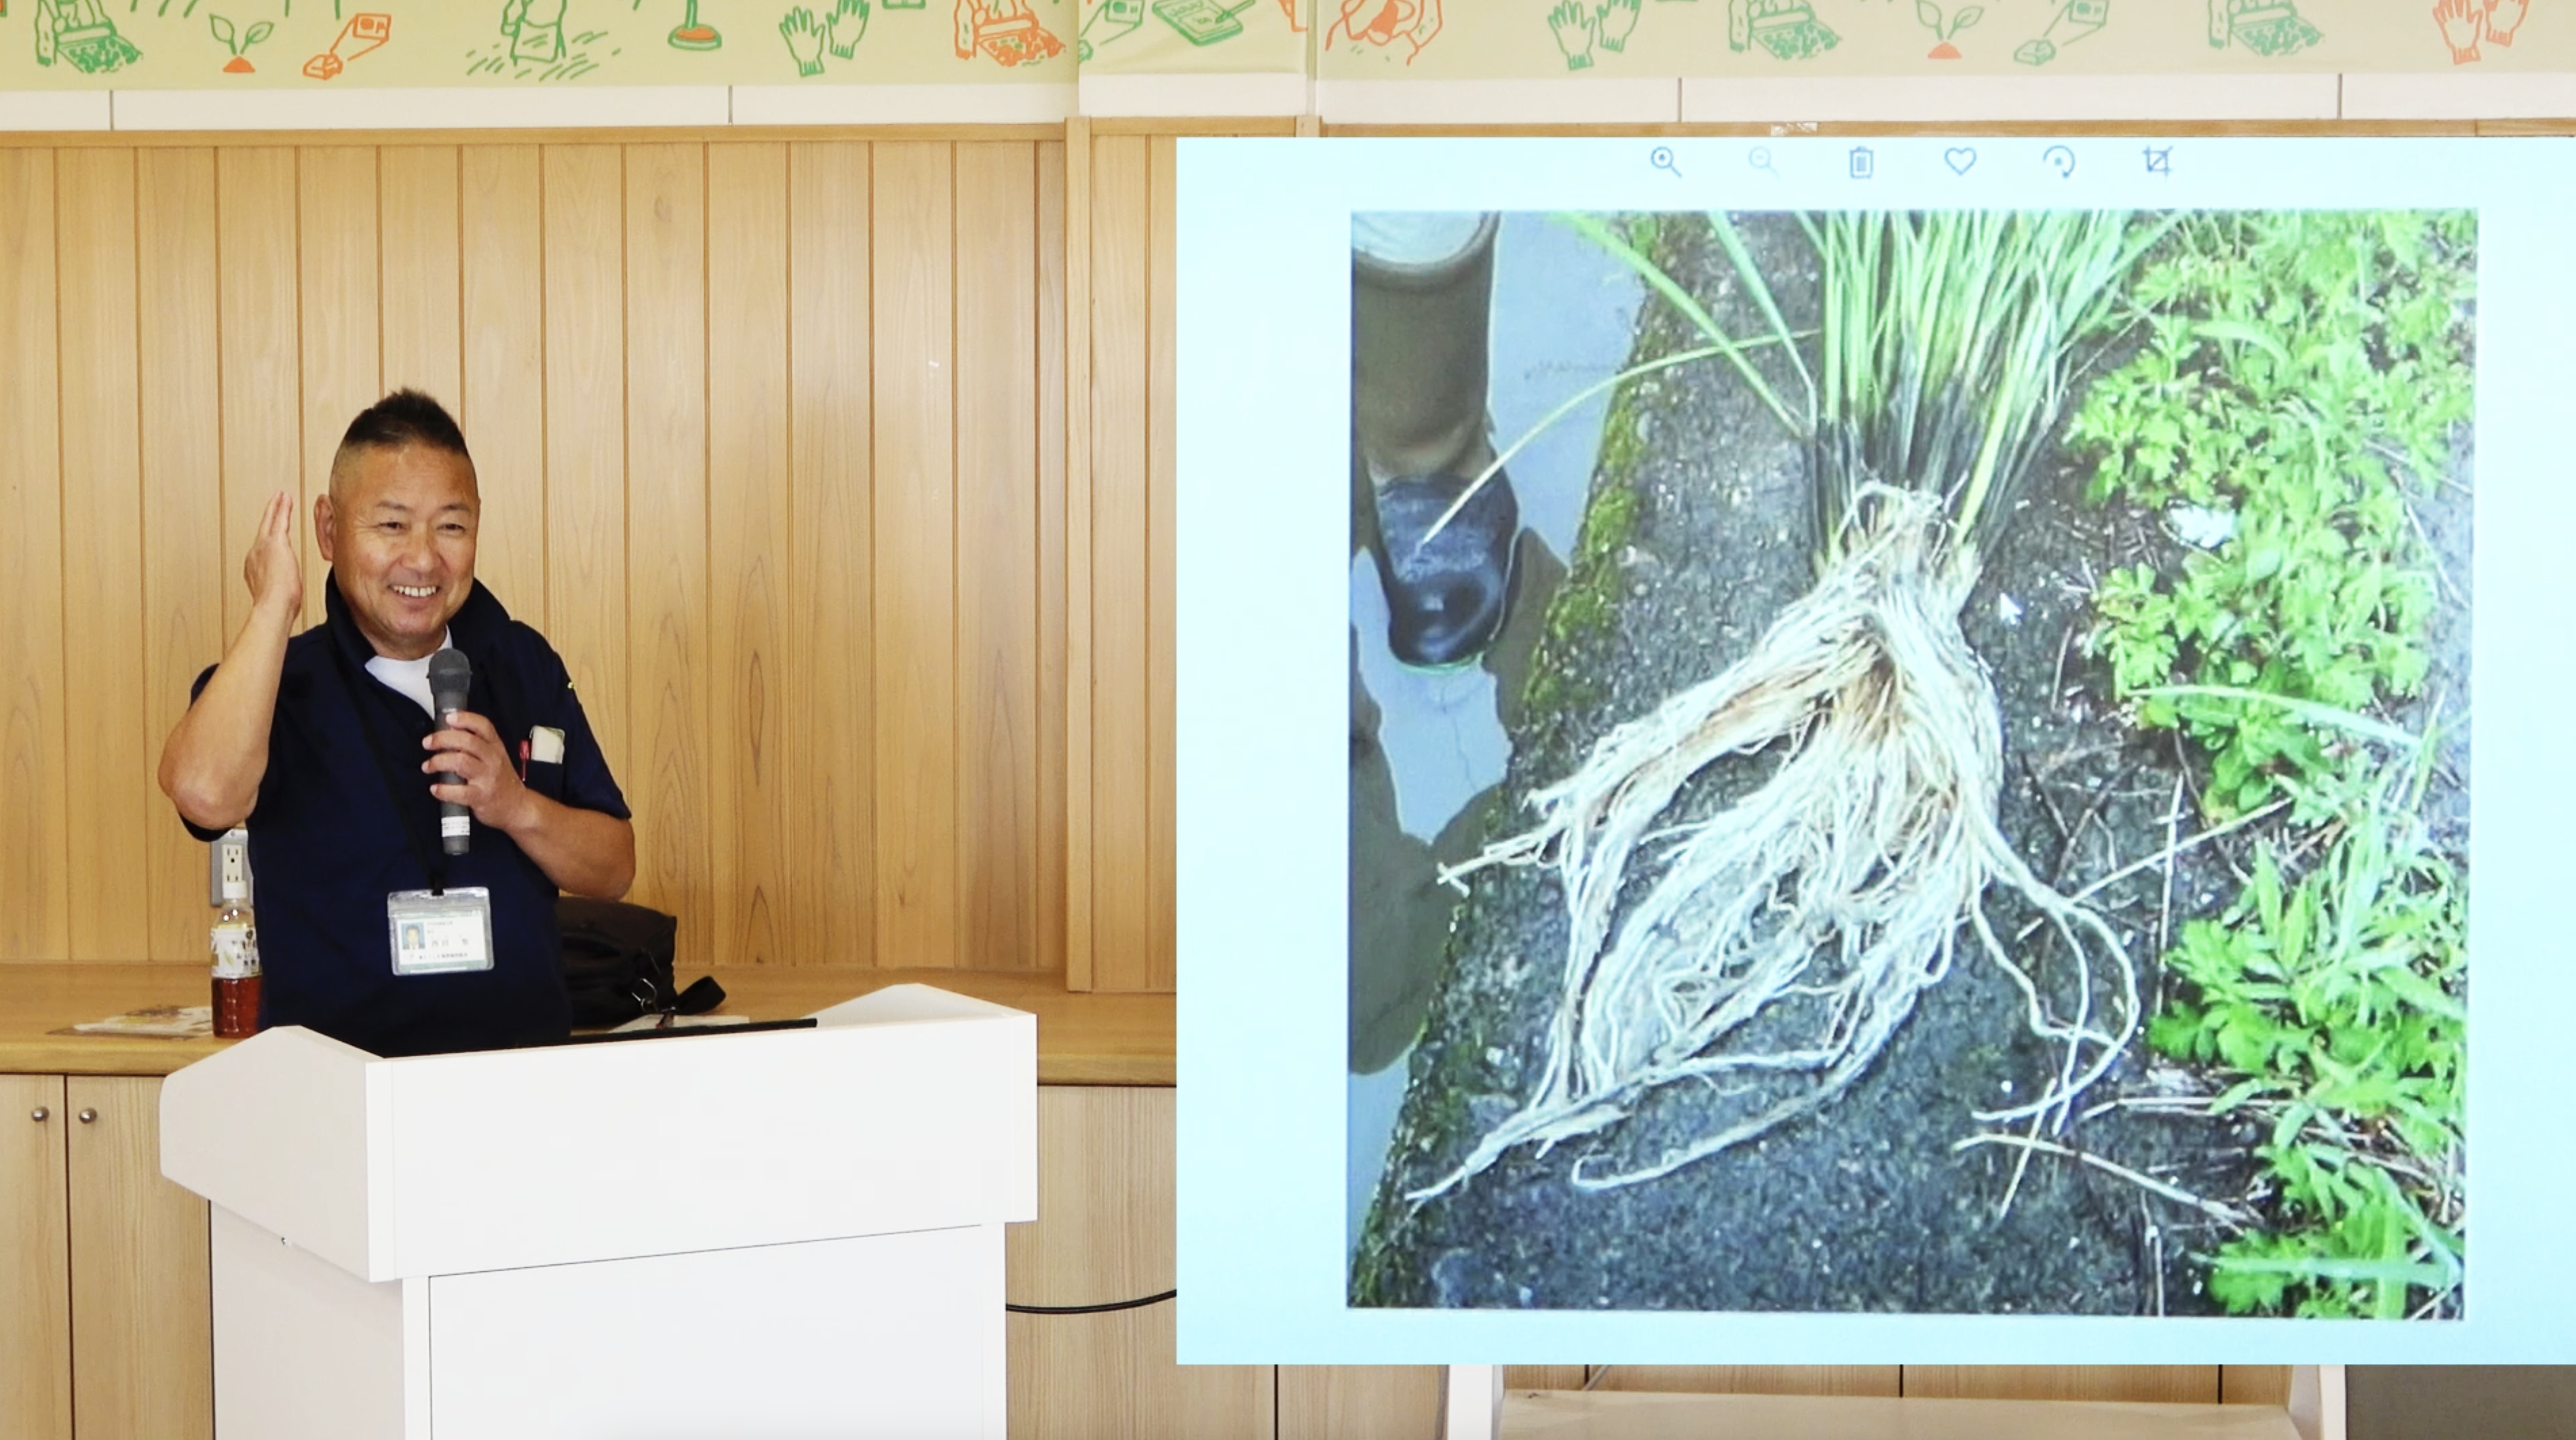 10月2日「BLOF勉強会【生態系の調和を保つ米づくりを目指して】」第3回目を実施しました